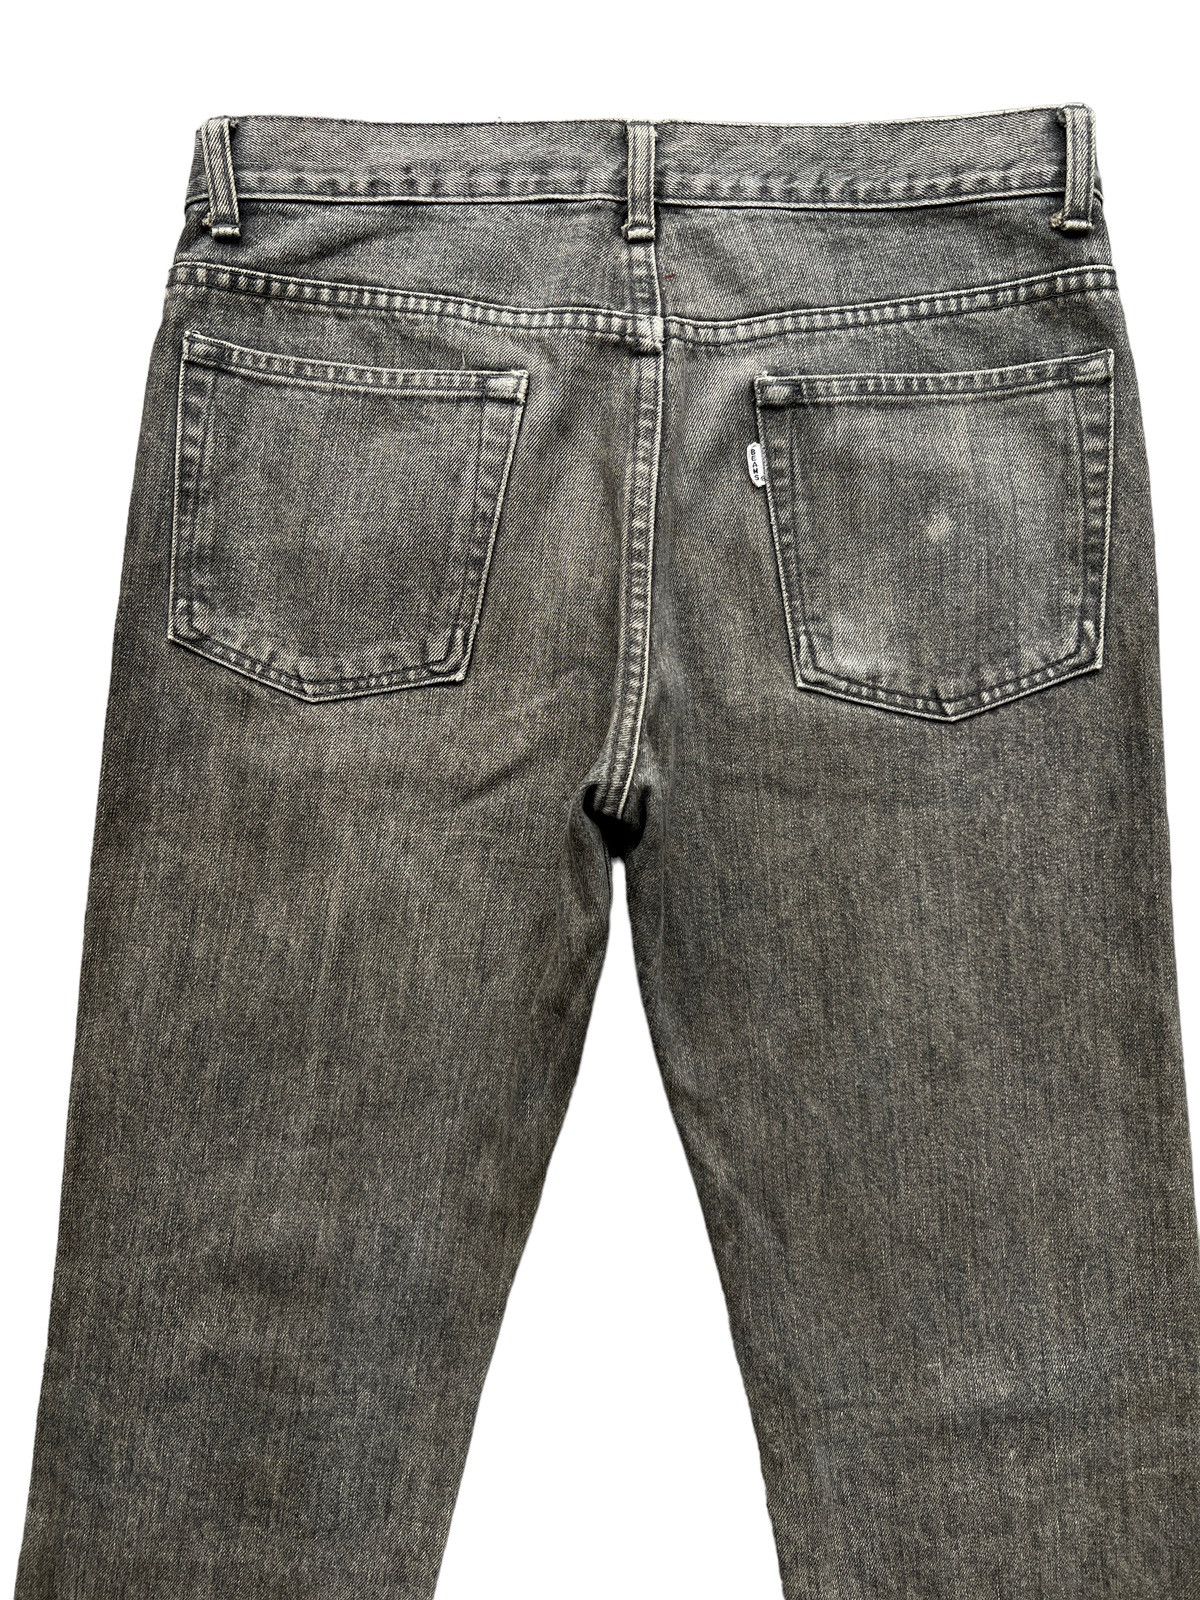 Vintage 90s Beams Skinny Fit Denim Jeans 32x29 - 3